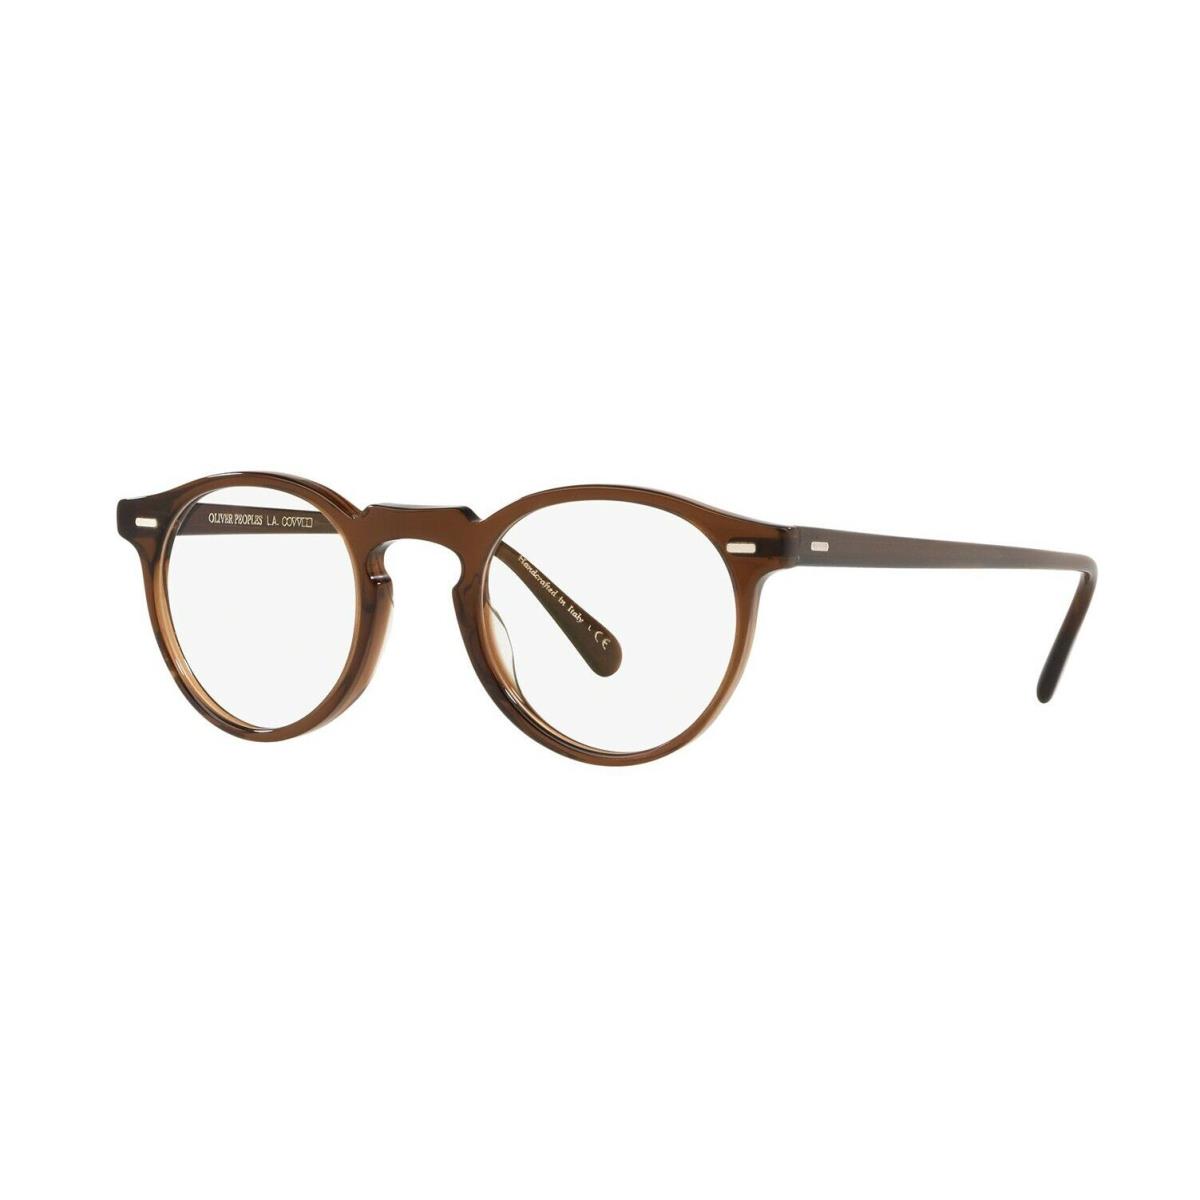 Oliver Peoples Gregory Peck OV 5186 Washed Dark Brown 1625 Eyeglasses - Frame: Washed Dark Brown